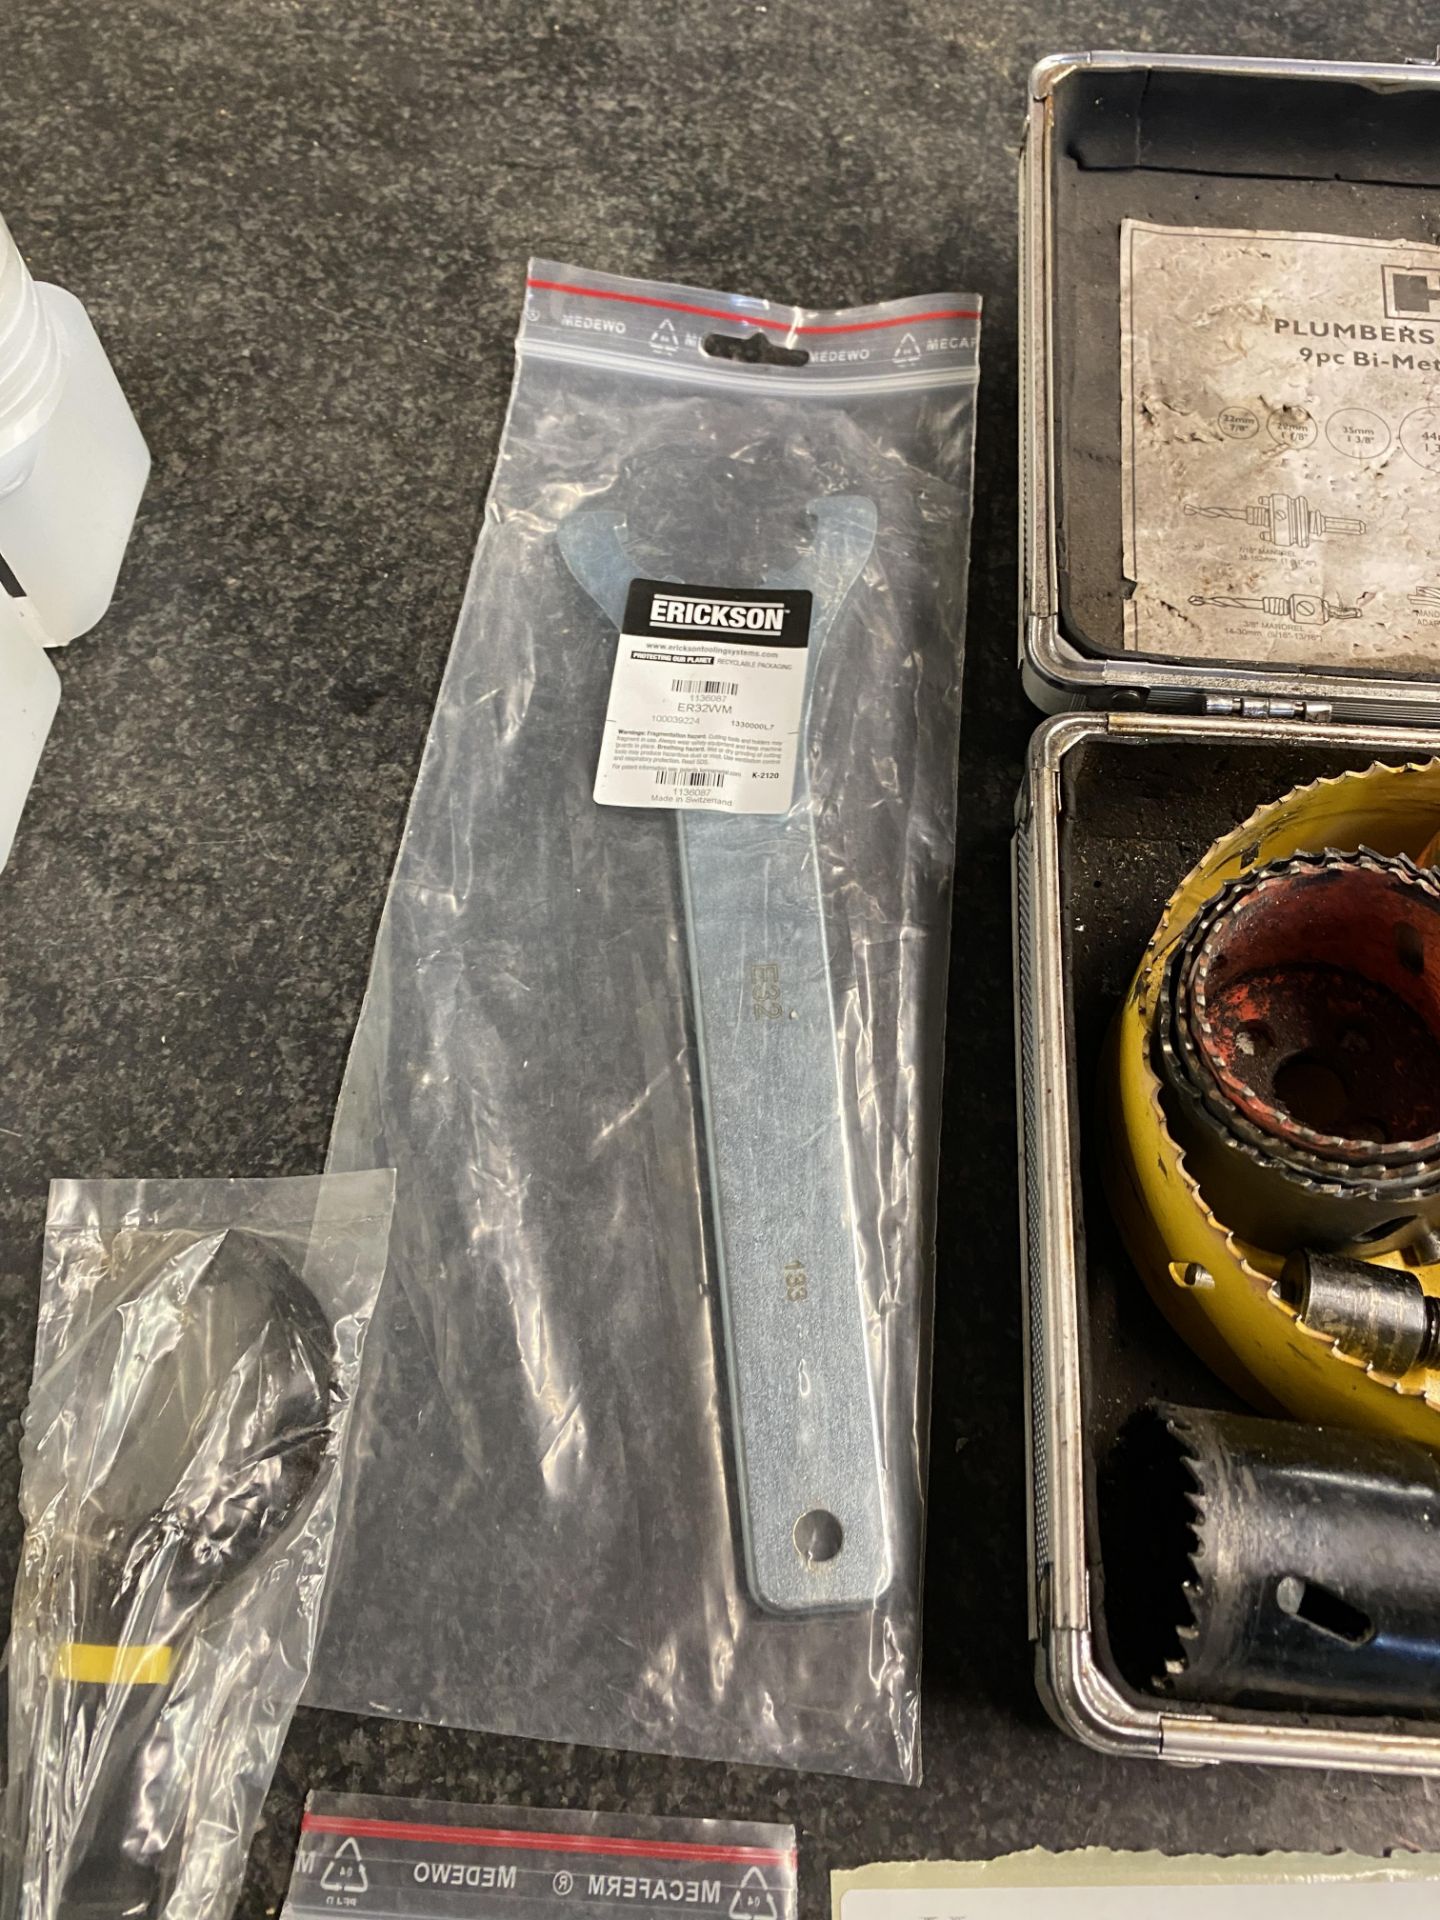 HR Plumbers Holesaw Kit 9 Pc Bi-Metal Kit with Erickson ER32WM Wrench - Bild 5 aus 9